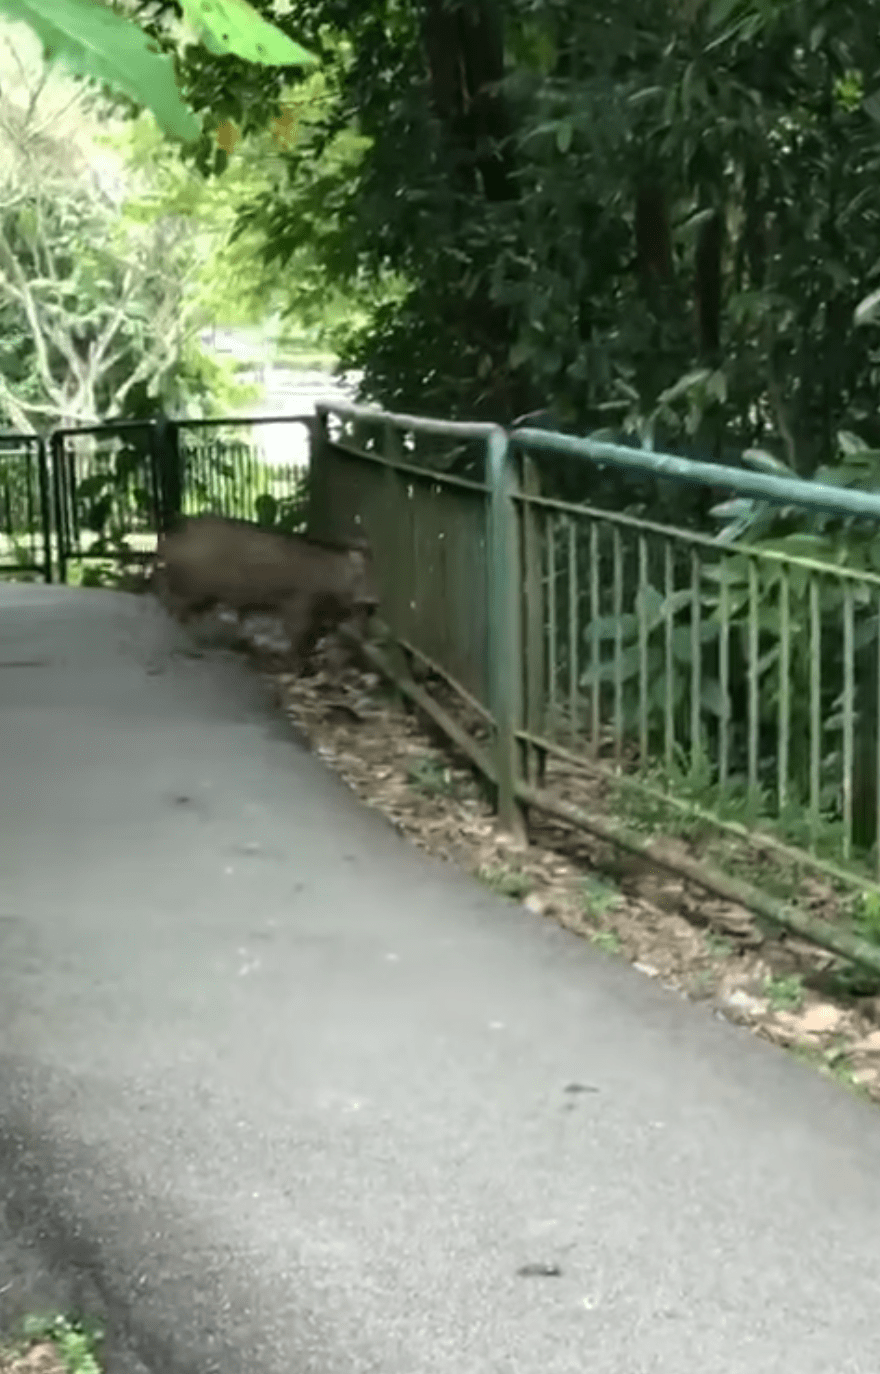 wild boar stuck